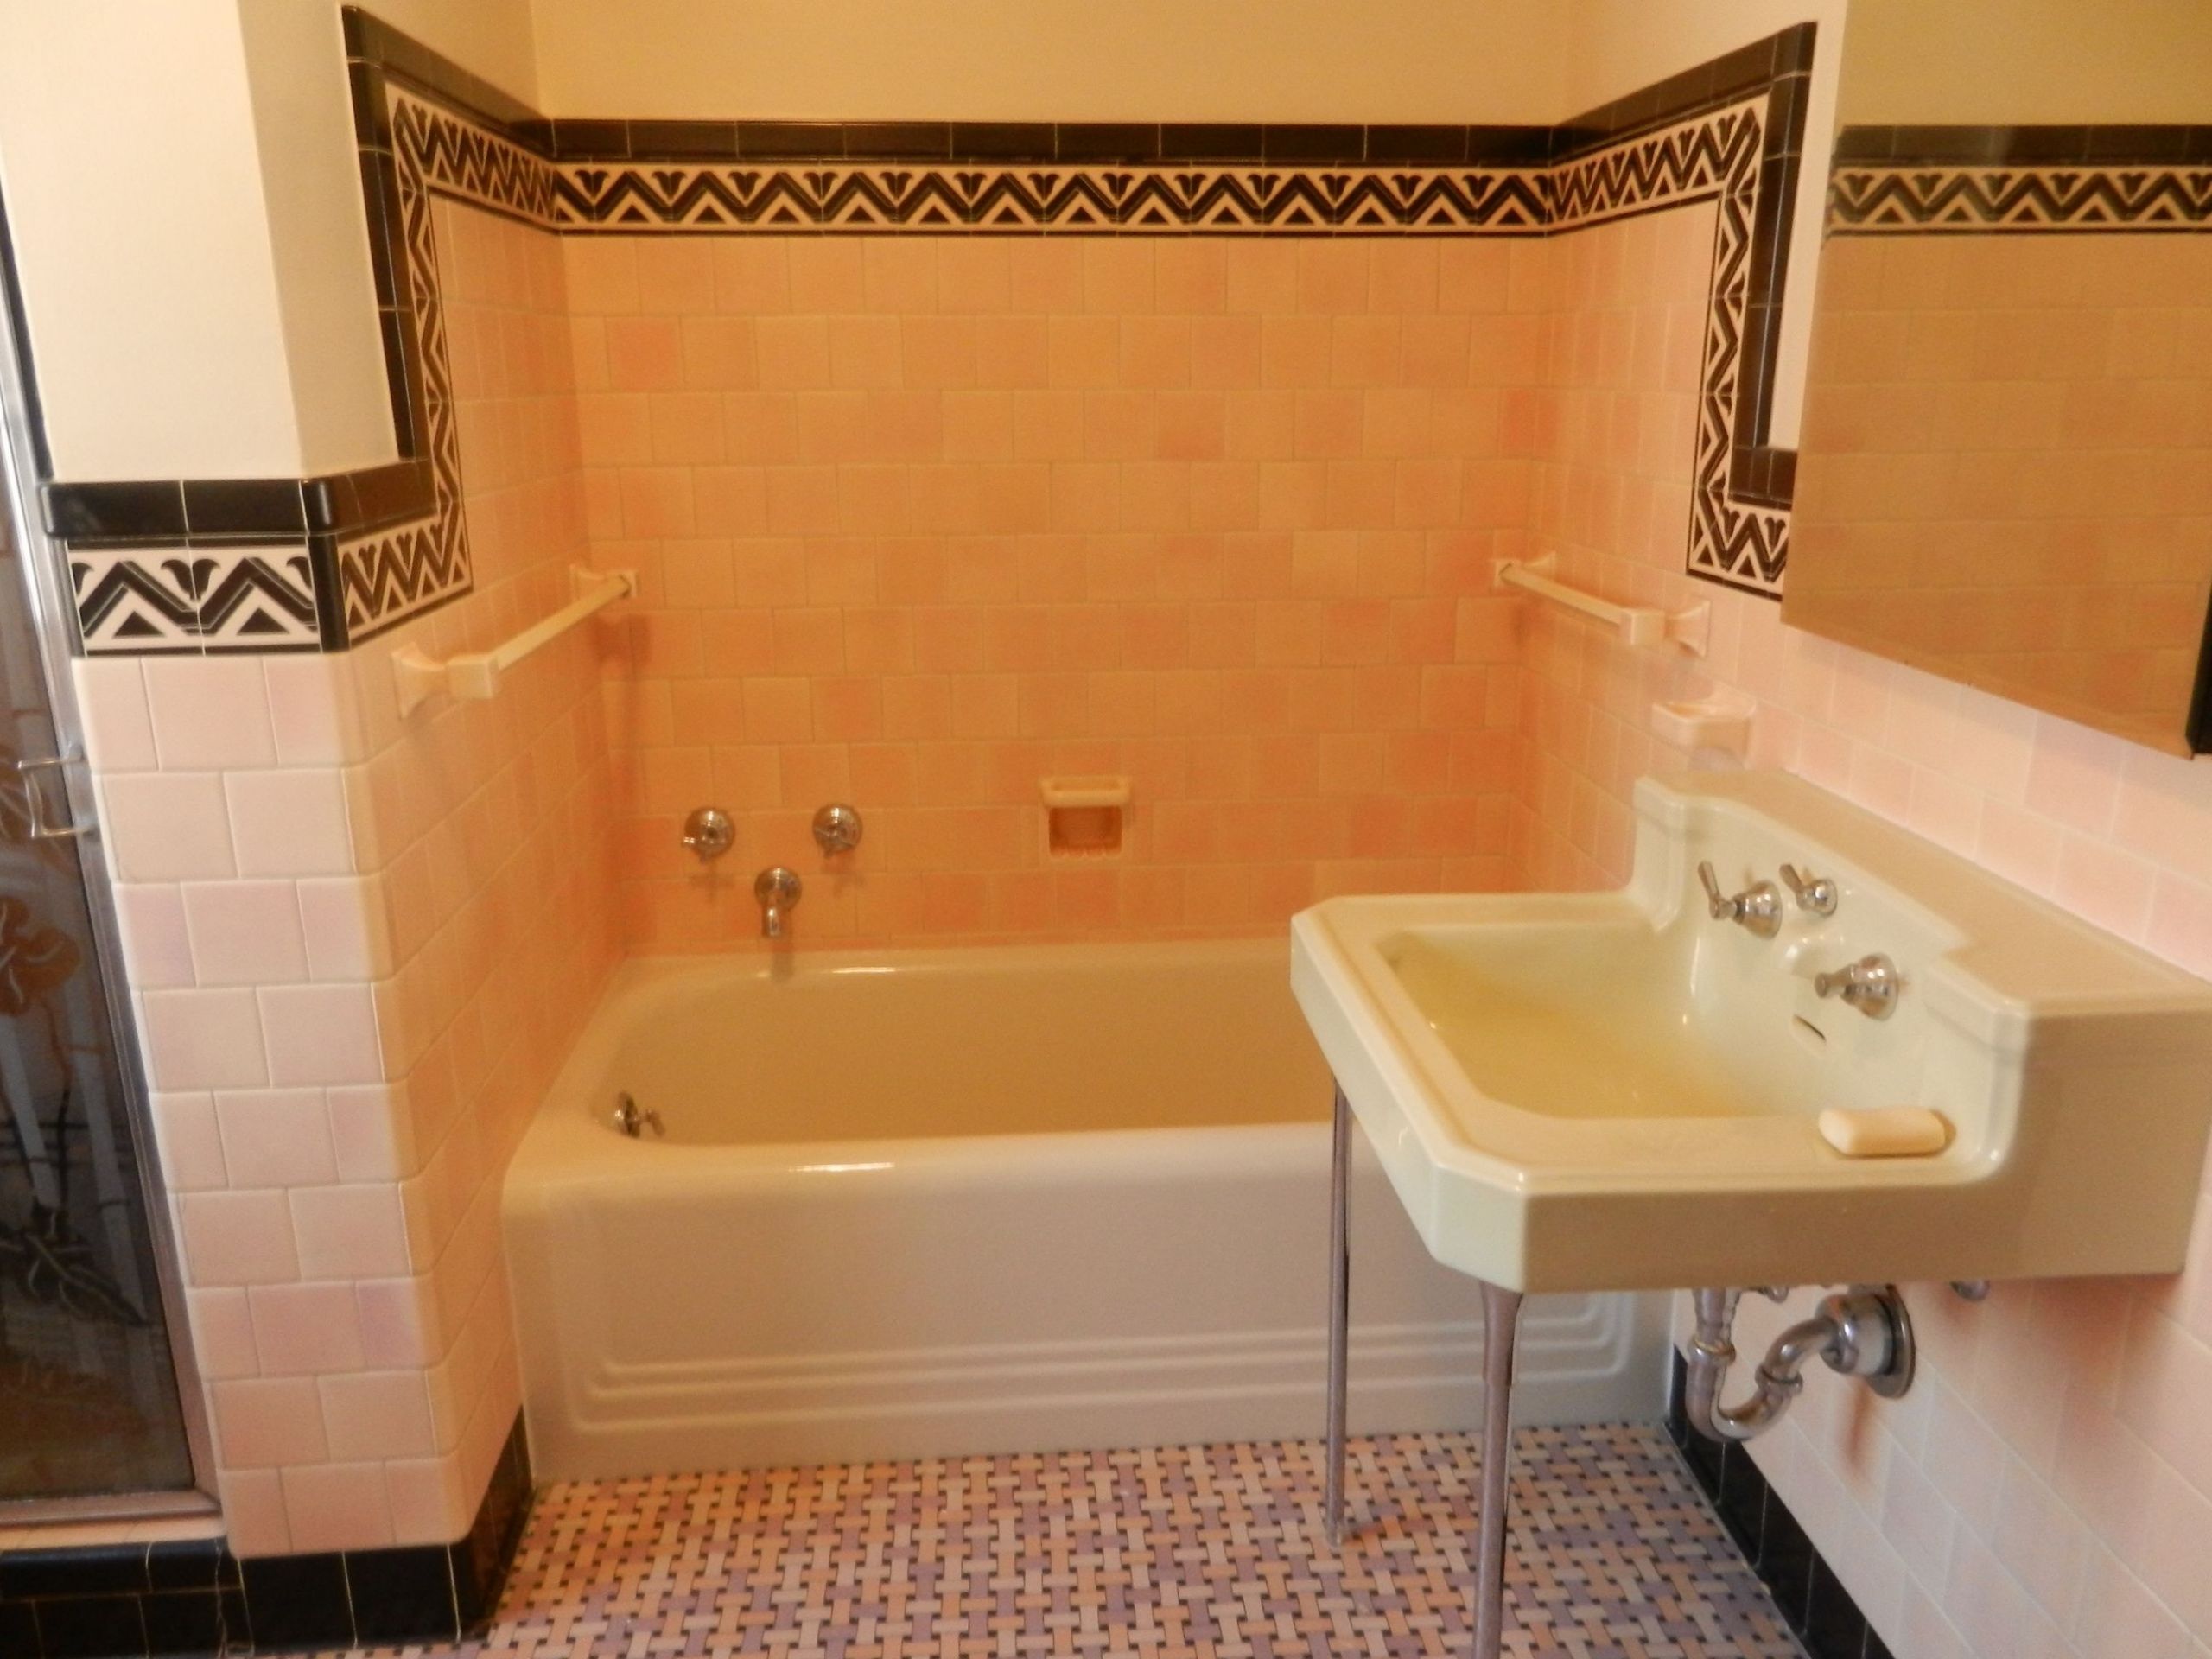 Vintage Bathroom Tile For Sale
 483 wonderful original architectural details from reader